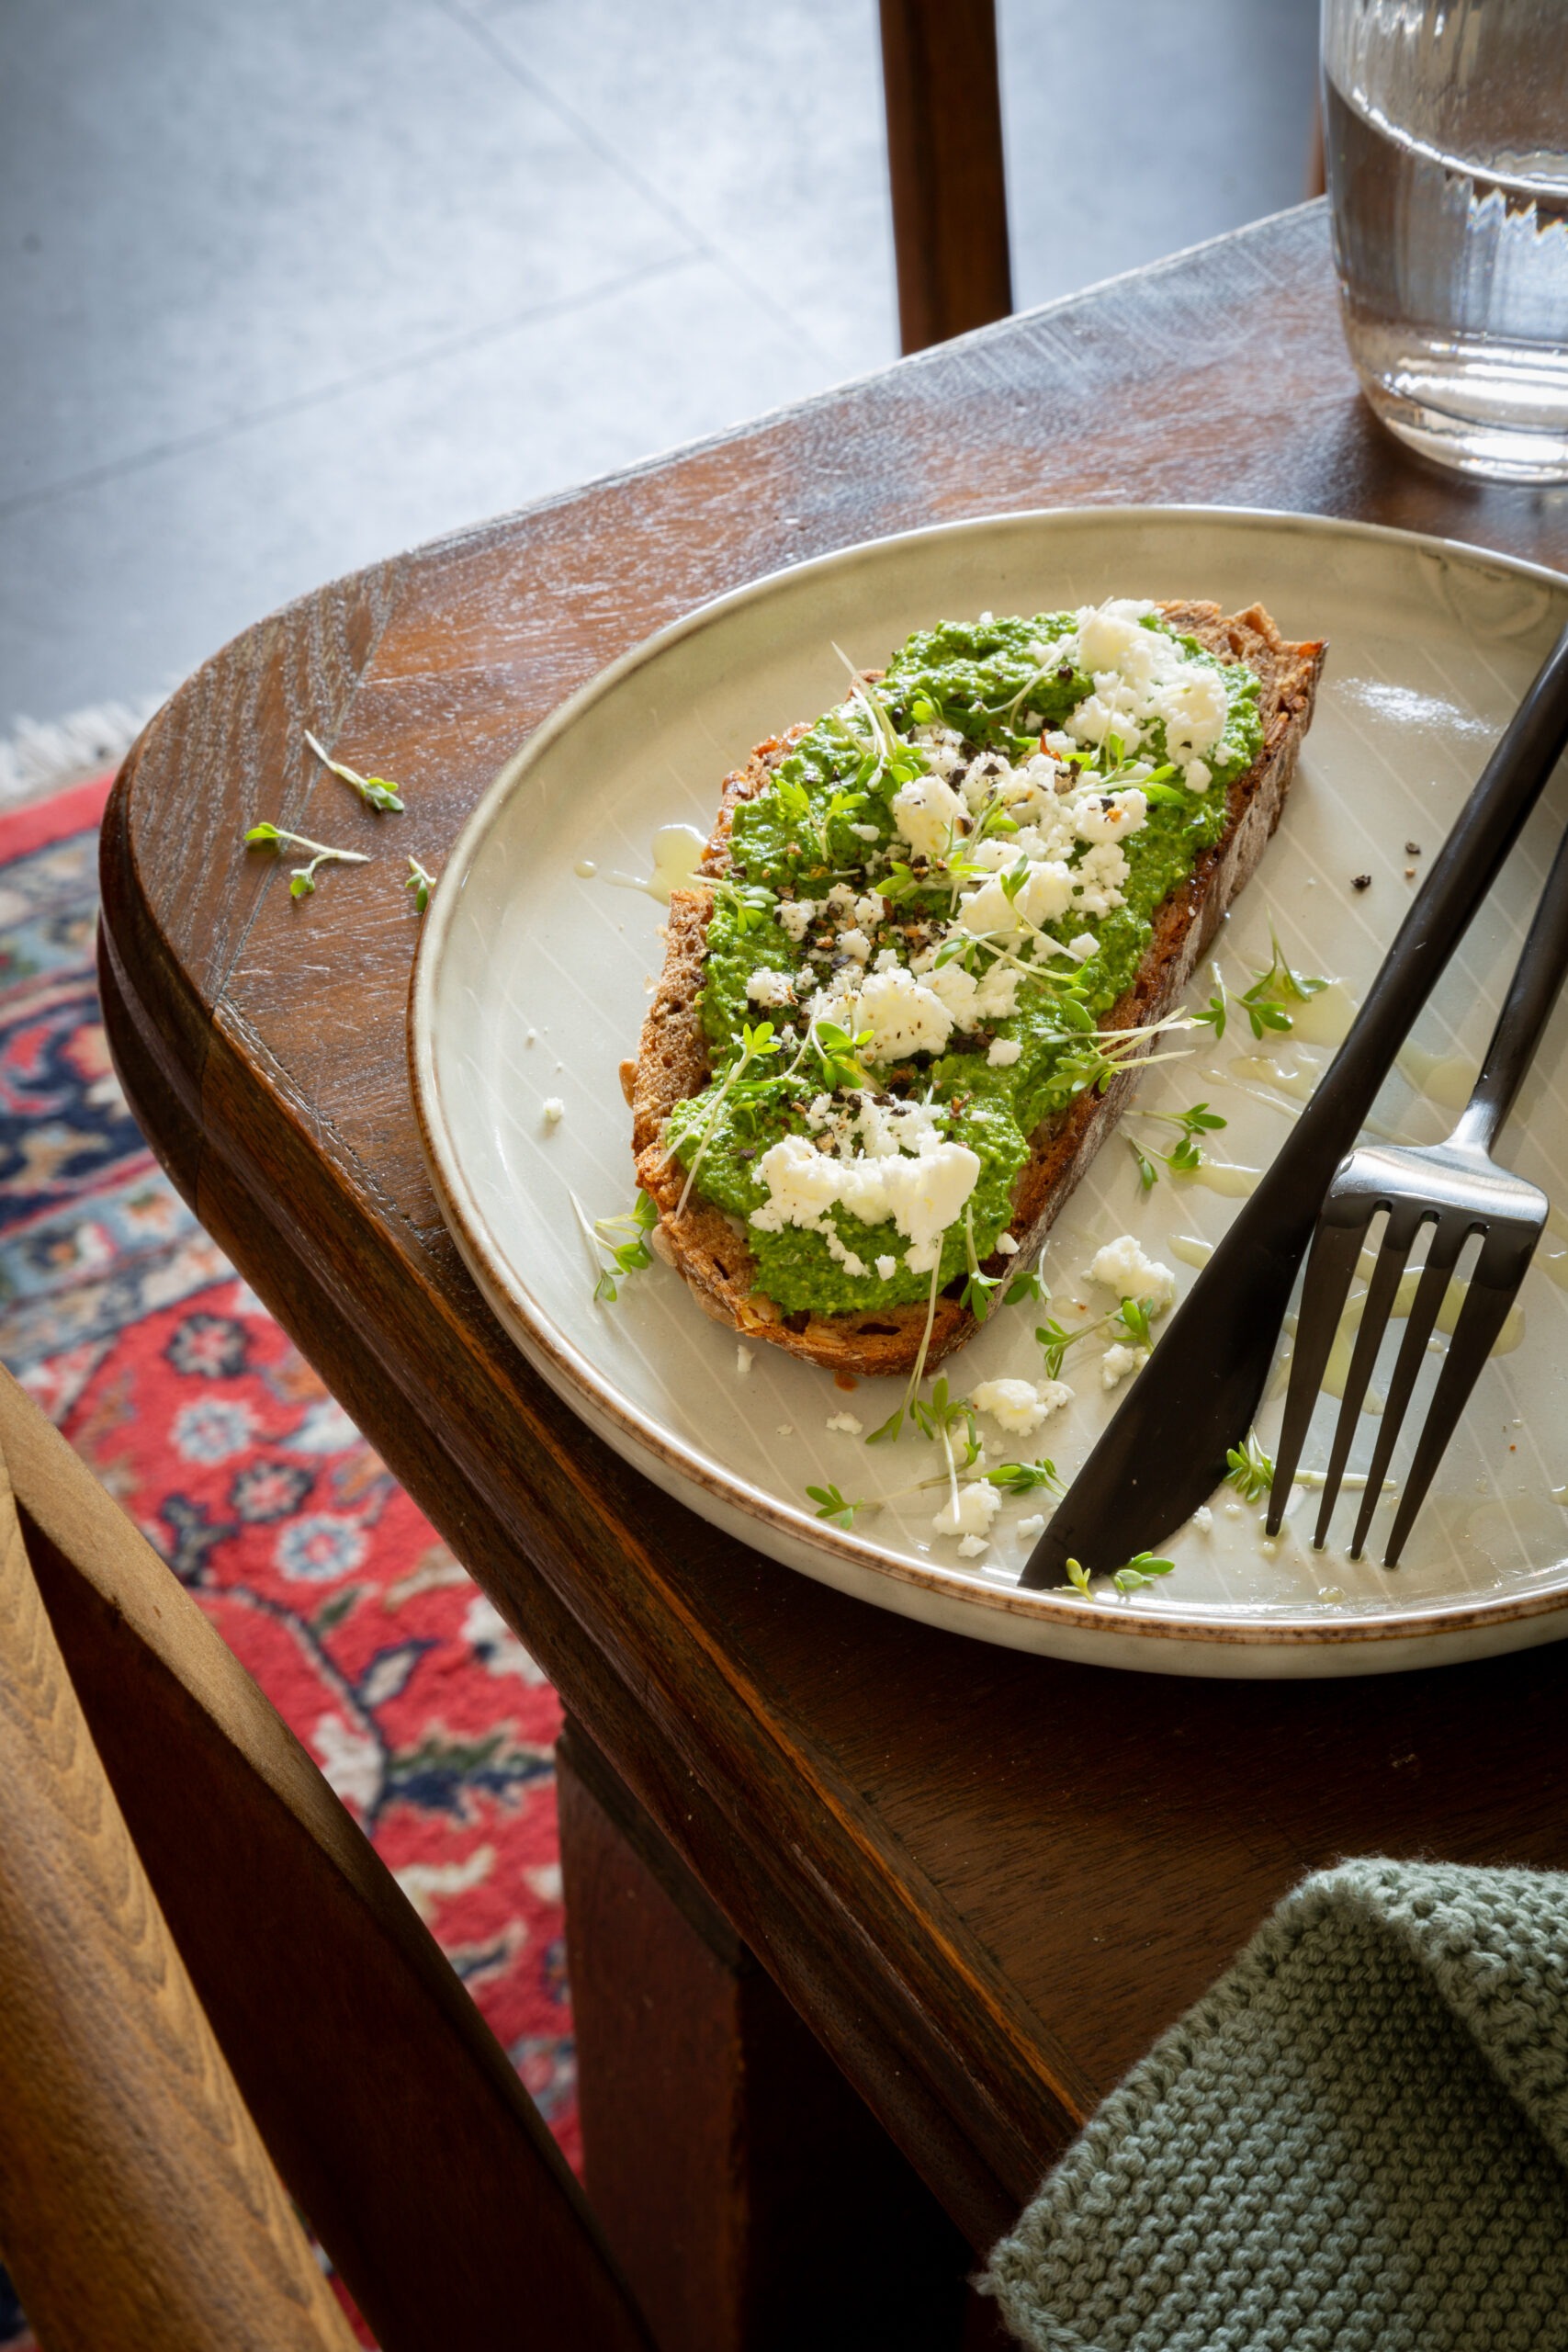 Tisch auf dem ein Teller steht mit Bärlauch-Pesto -Brot, getoppt mit Feta und Olivenöl.